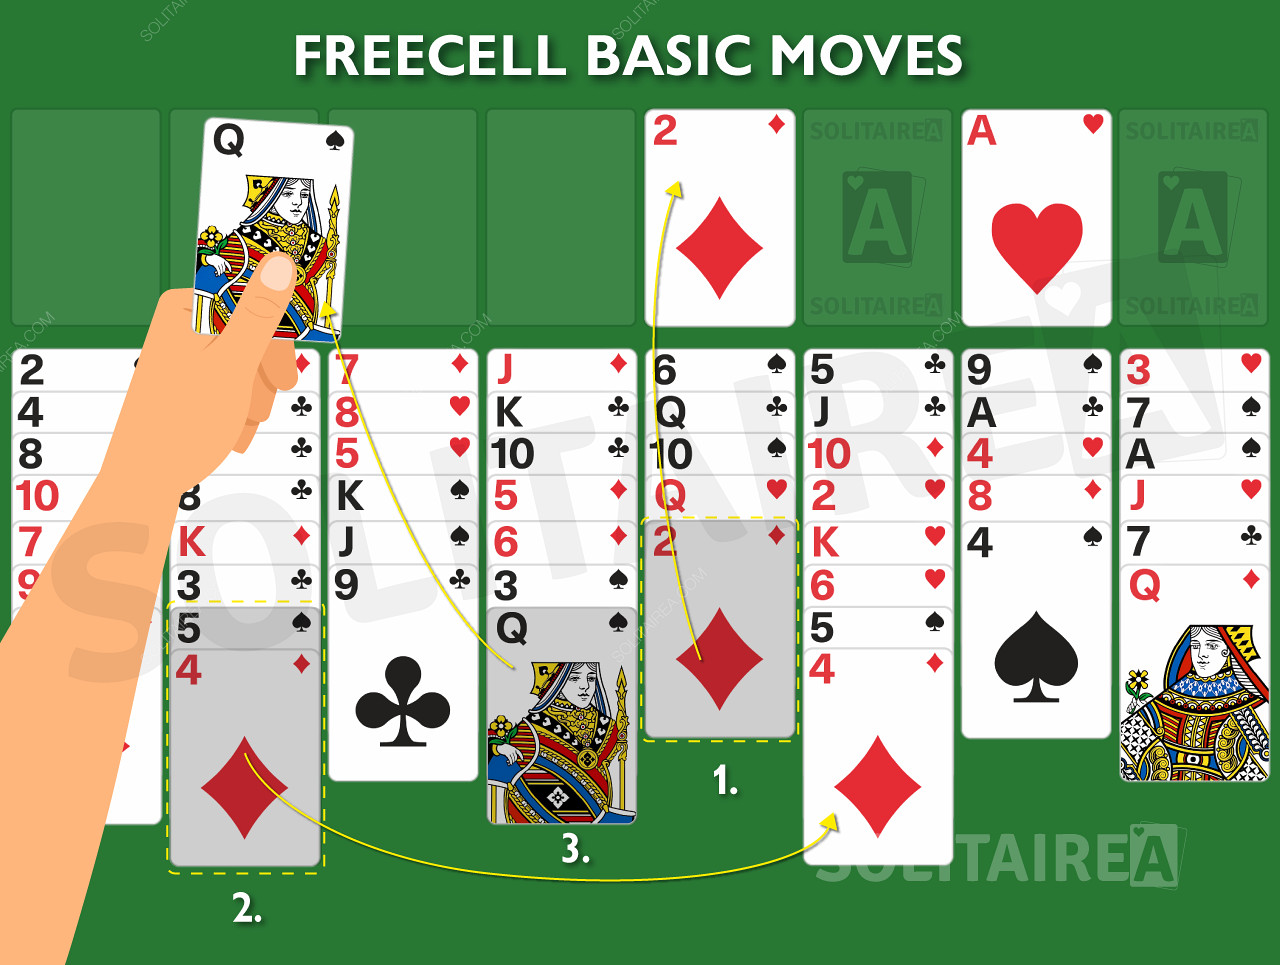 Imagem de jogo mostrando as regras básicas em ação